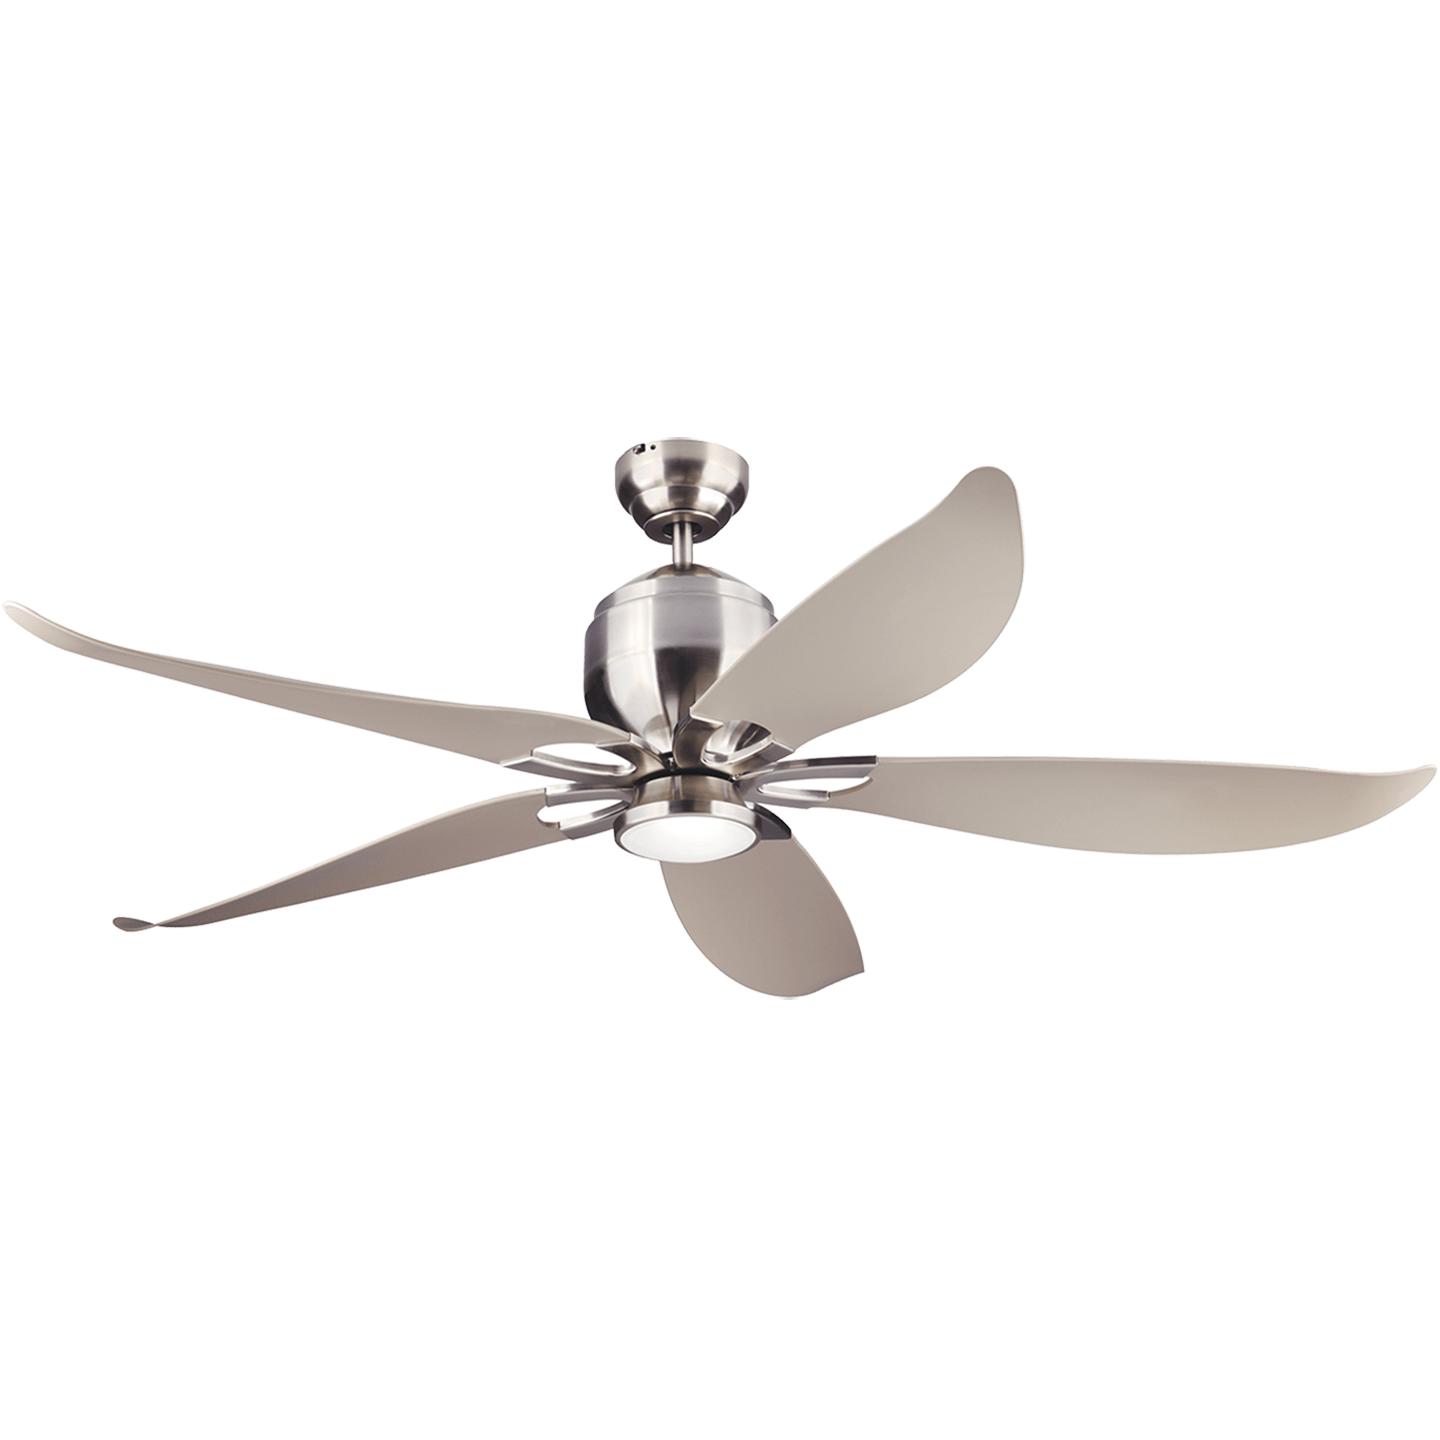 Купить Потолочный вентилятор Lily 56" LED Ceiling Fan в интернет-магазине roooms.ru